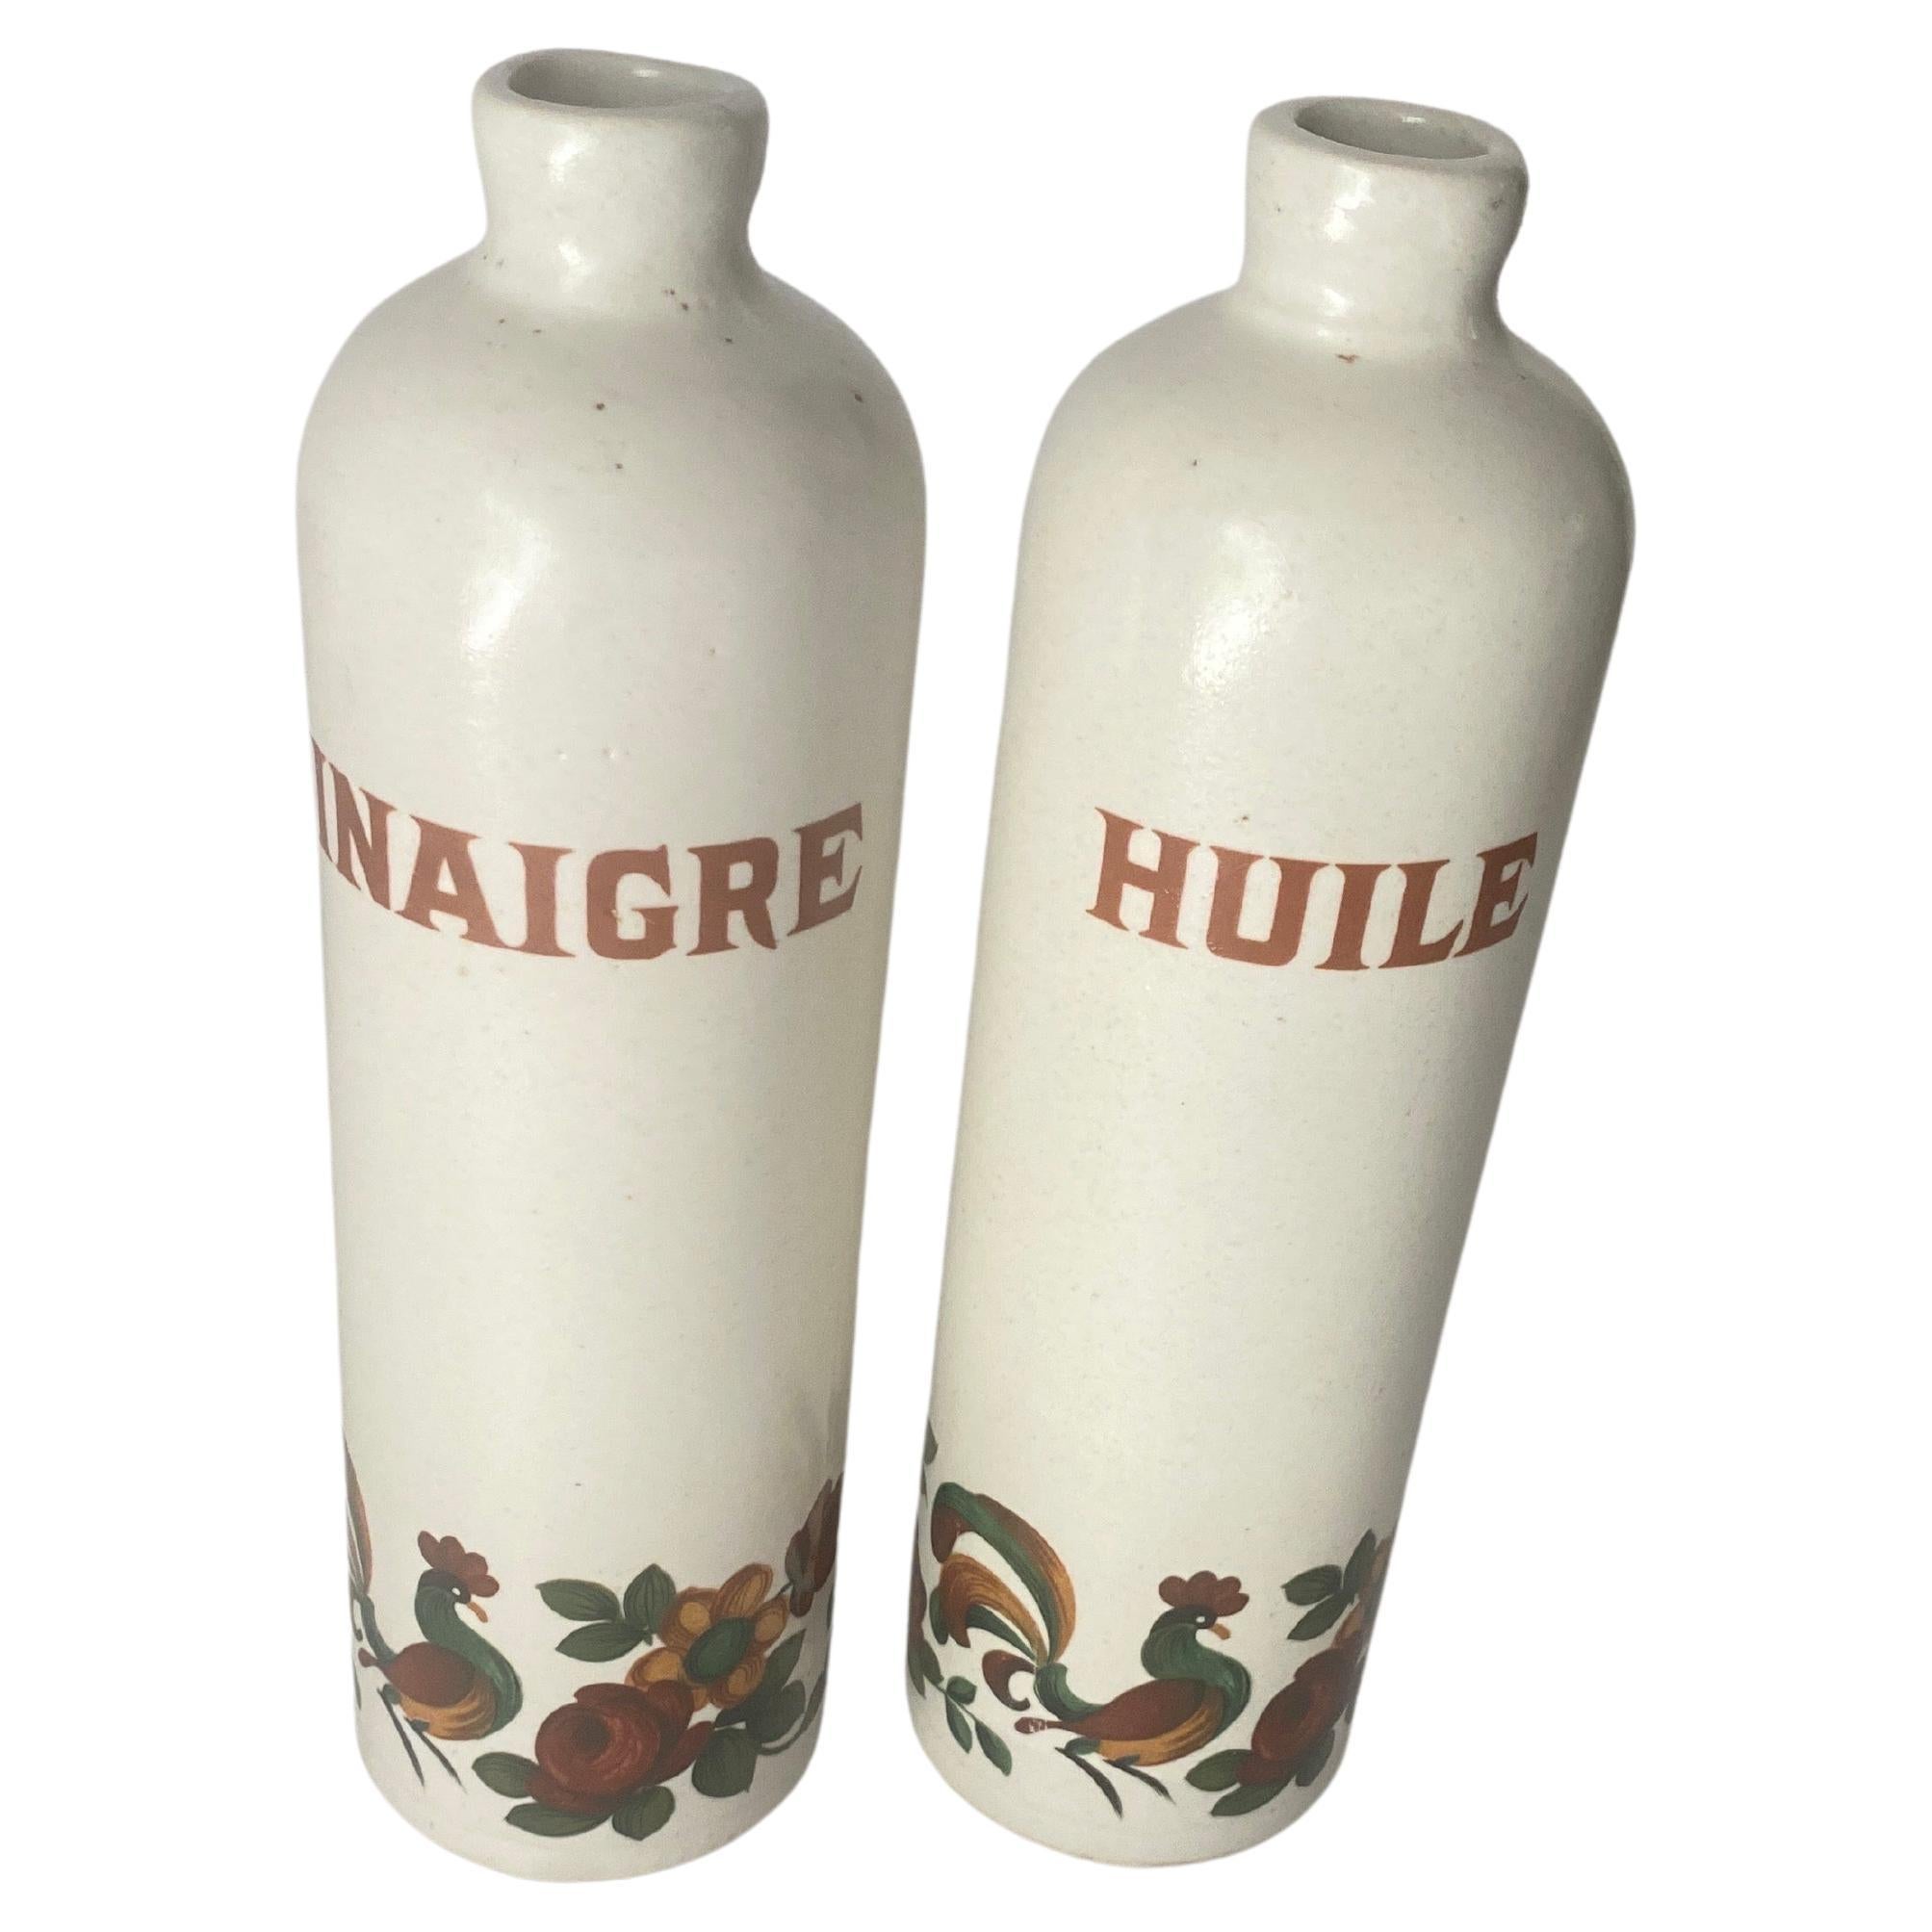 Ein Paar Öl- und Essigflaschen aus Faince in der Farbe Beige. Es wurde im 19. Jahrhundert in Frankreich hergestellt.
Verziert mit Blumen und Hahn-Muster.